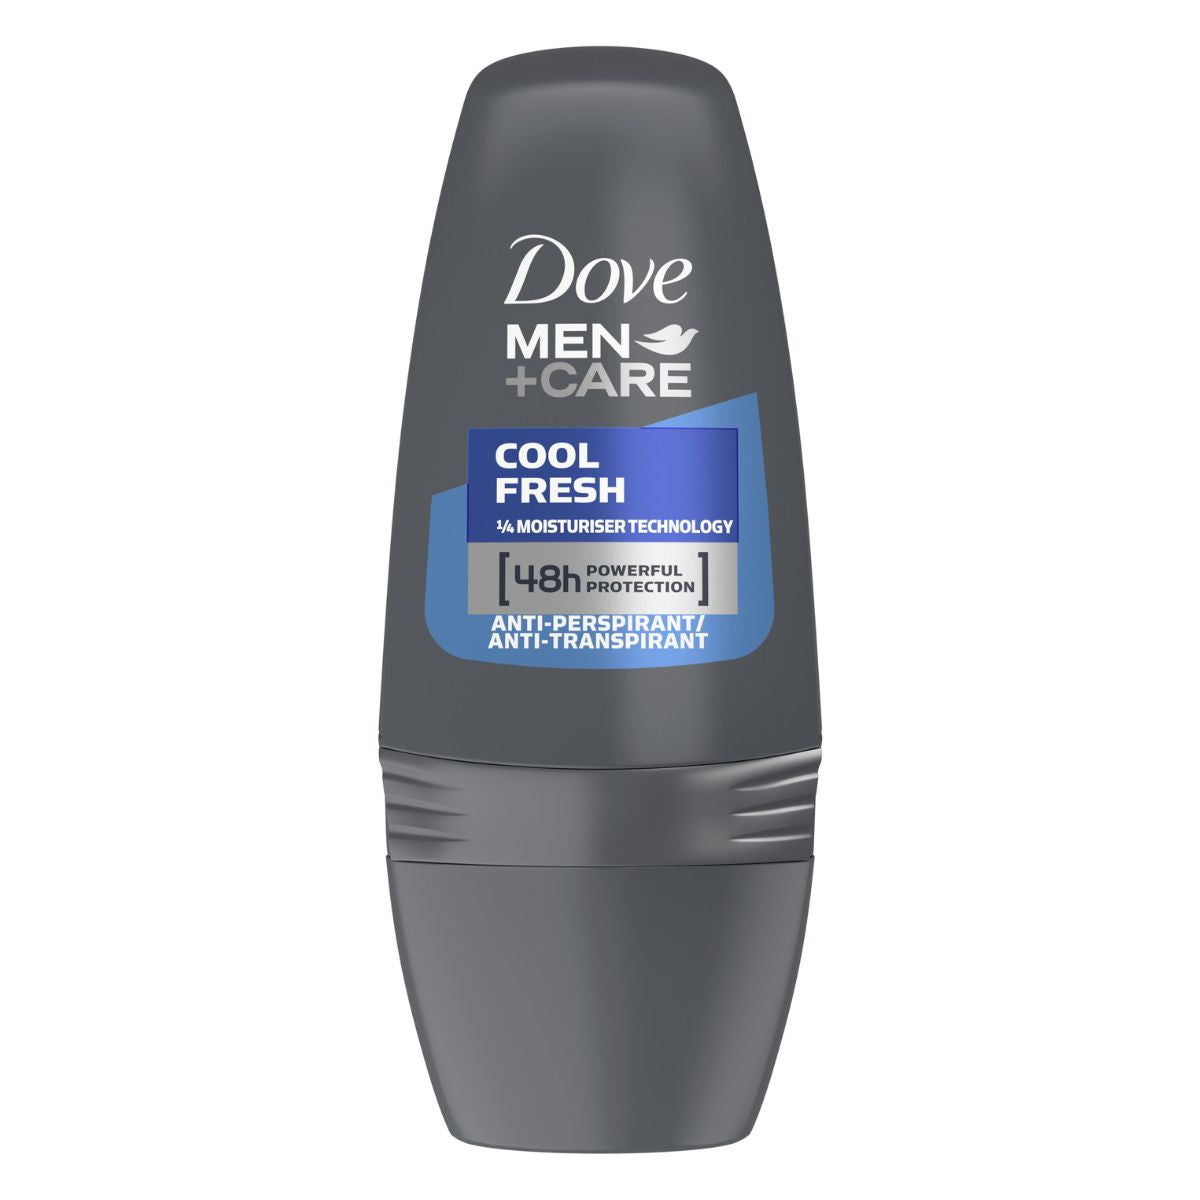 Dove Men+Care Deodorant Cool Fresh - 50ml